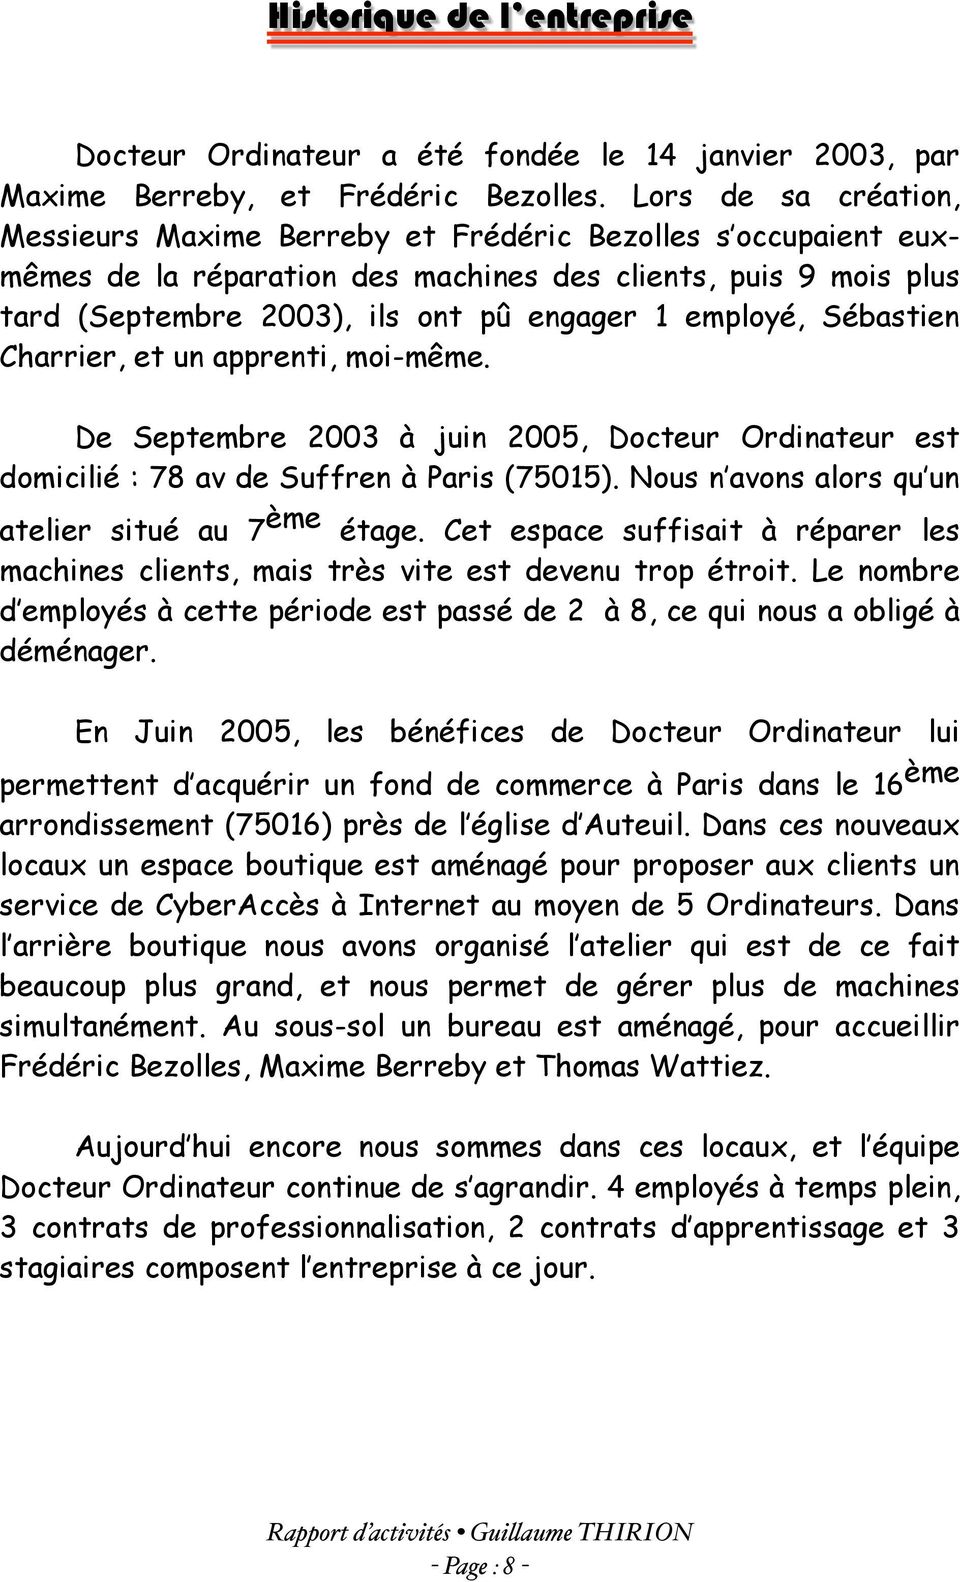 employé, Sébastien Charrier, et un apprenti, moi-même. De Septembre 2003 à juin 2005, Docteur Ordinateur est domicilié : 78 av de Suffren à Paris (75015).